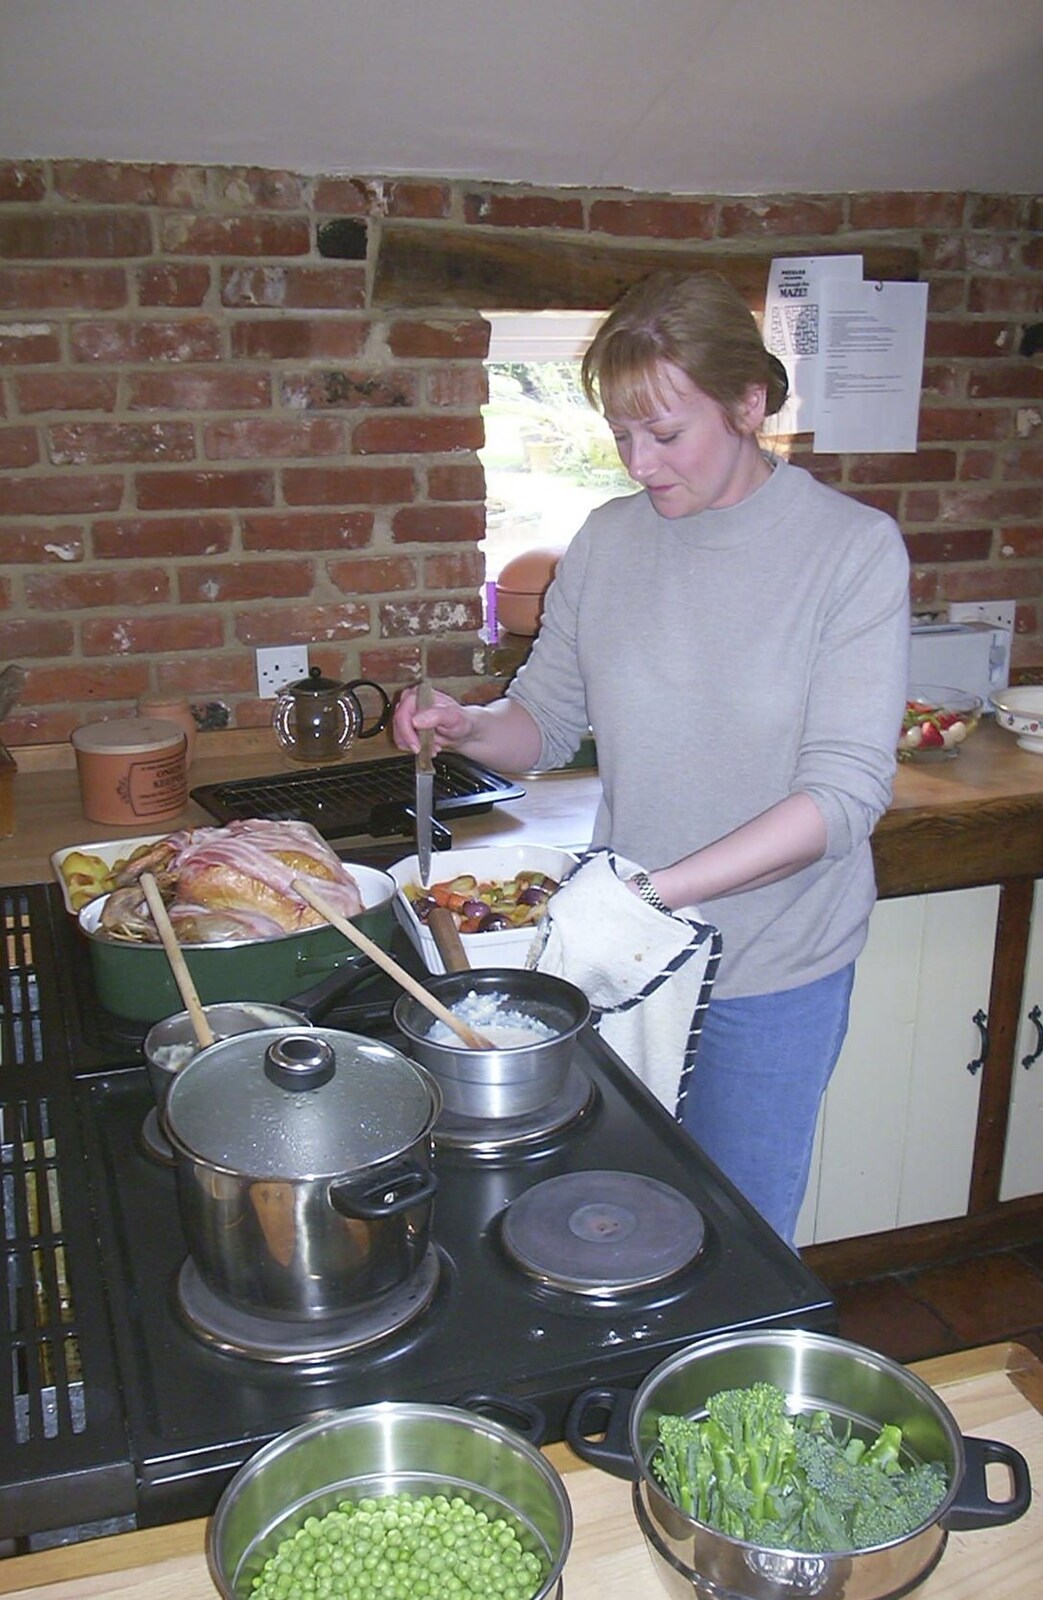 Carolyn on Sunday, Wymondham, Norfolk - 23rd March 2003: Carolyn gets lunch sorted